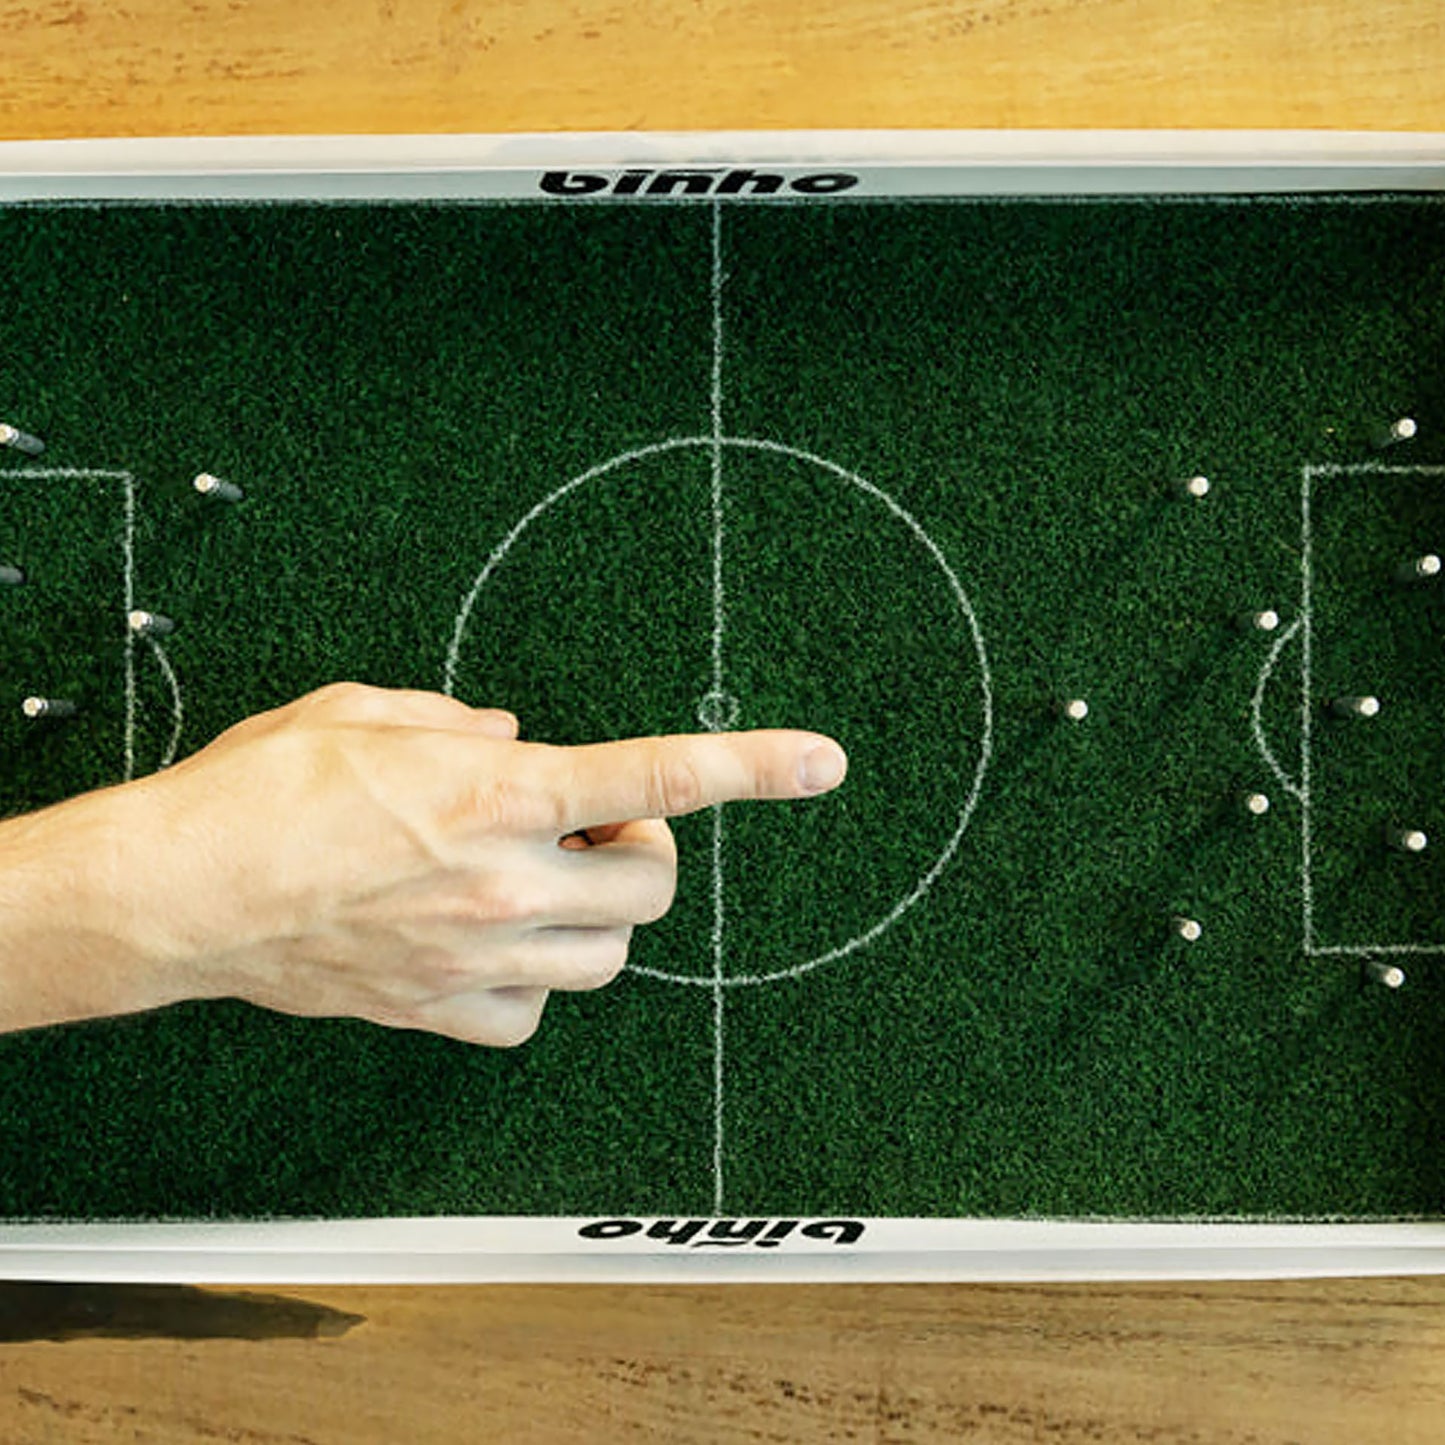 Binho Green Turf Finger Soccer Game